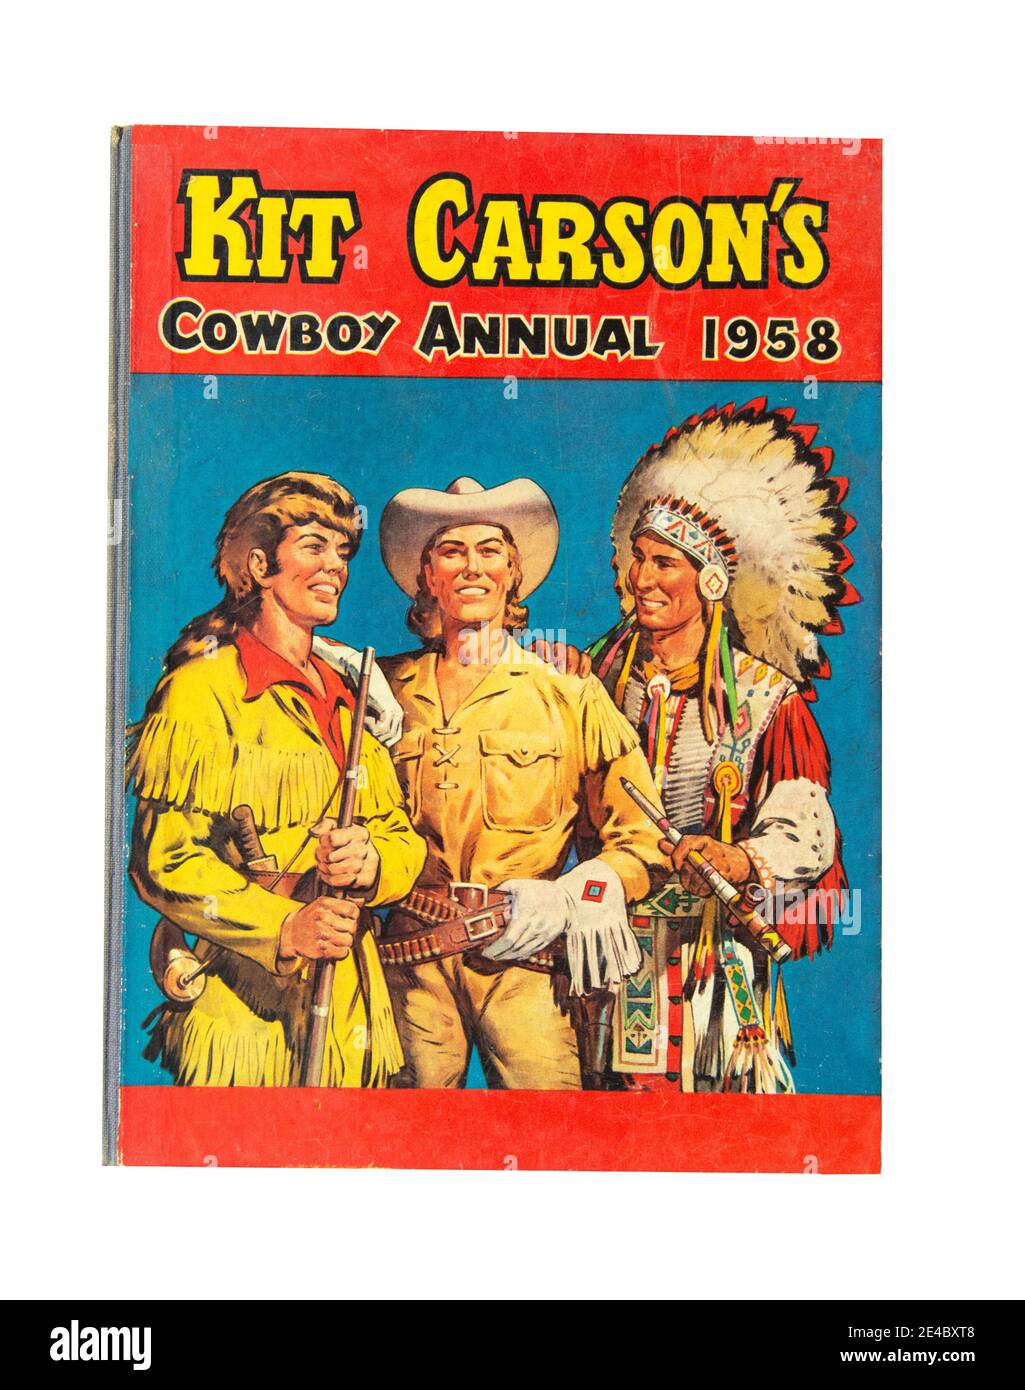 Kit Carson's Cowboy Annual 1958, Grand Londres, Royaume-Uni Banque D'Images